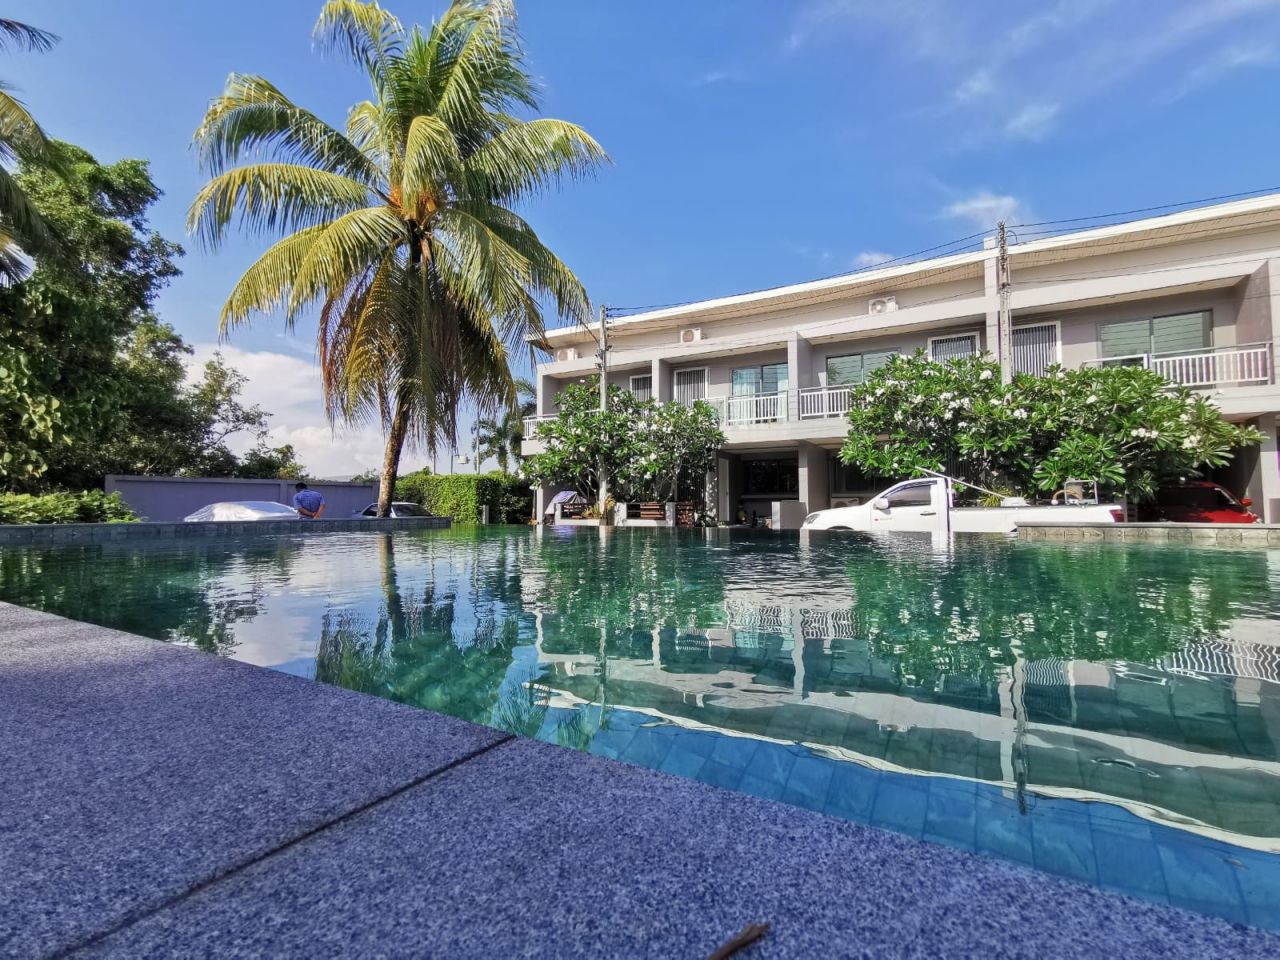 Villa in Insel Phuket, Thailand, 108 m2 - Foto 1